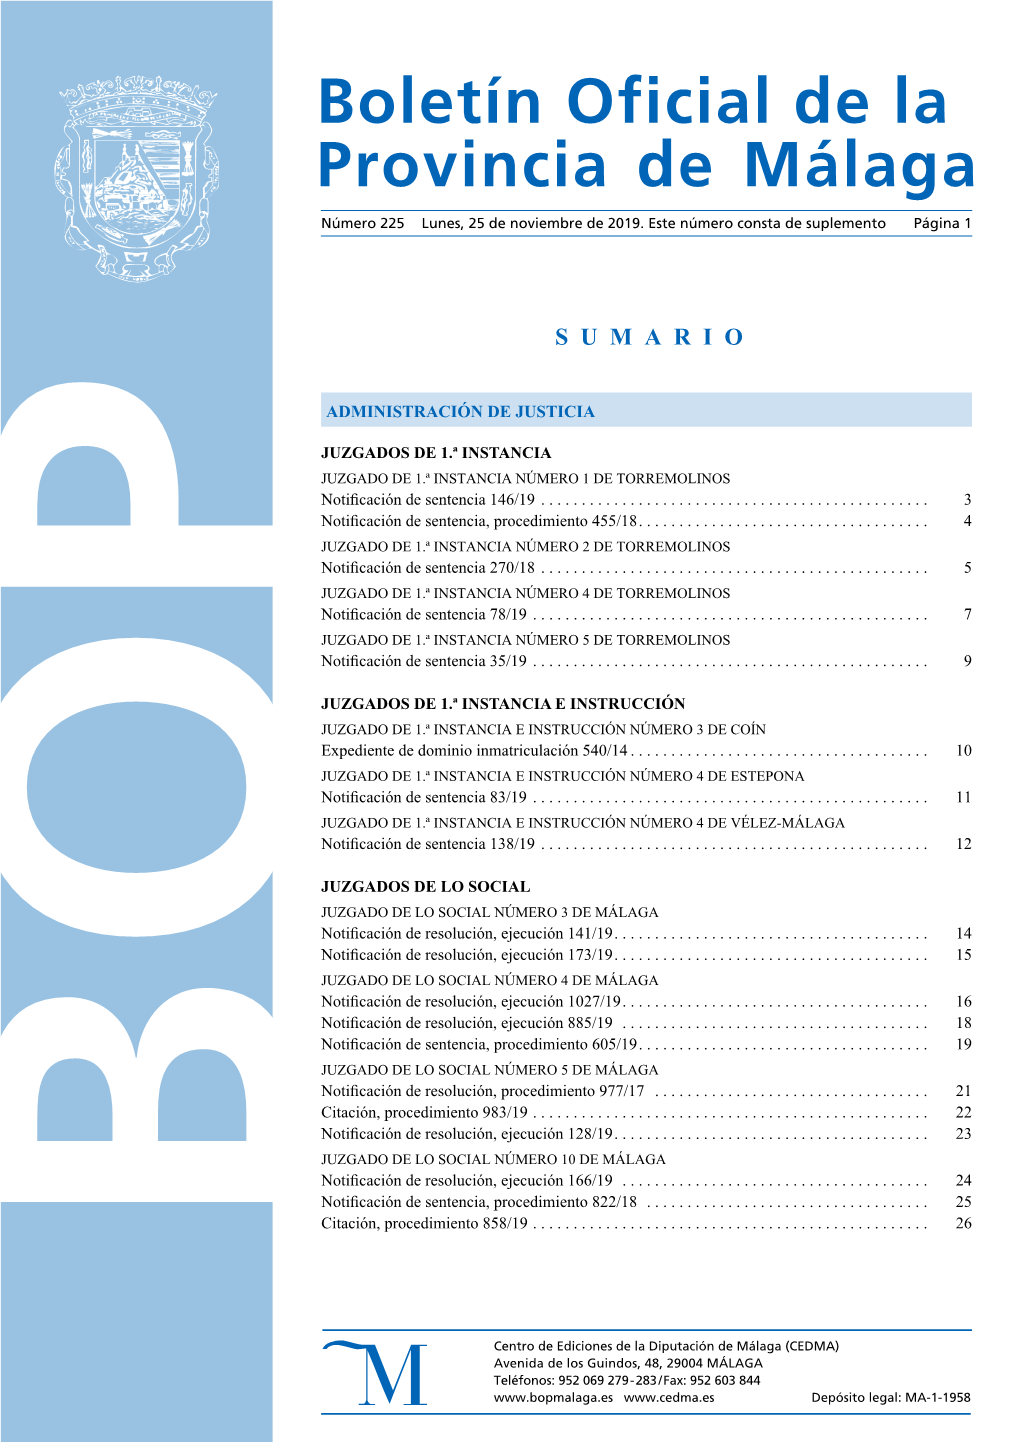 Boletín Oficial De La Provincia De Málaga: BOP 225, Año 2019